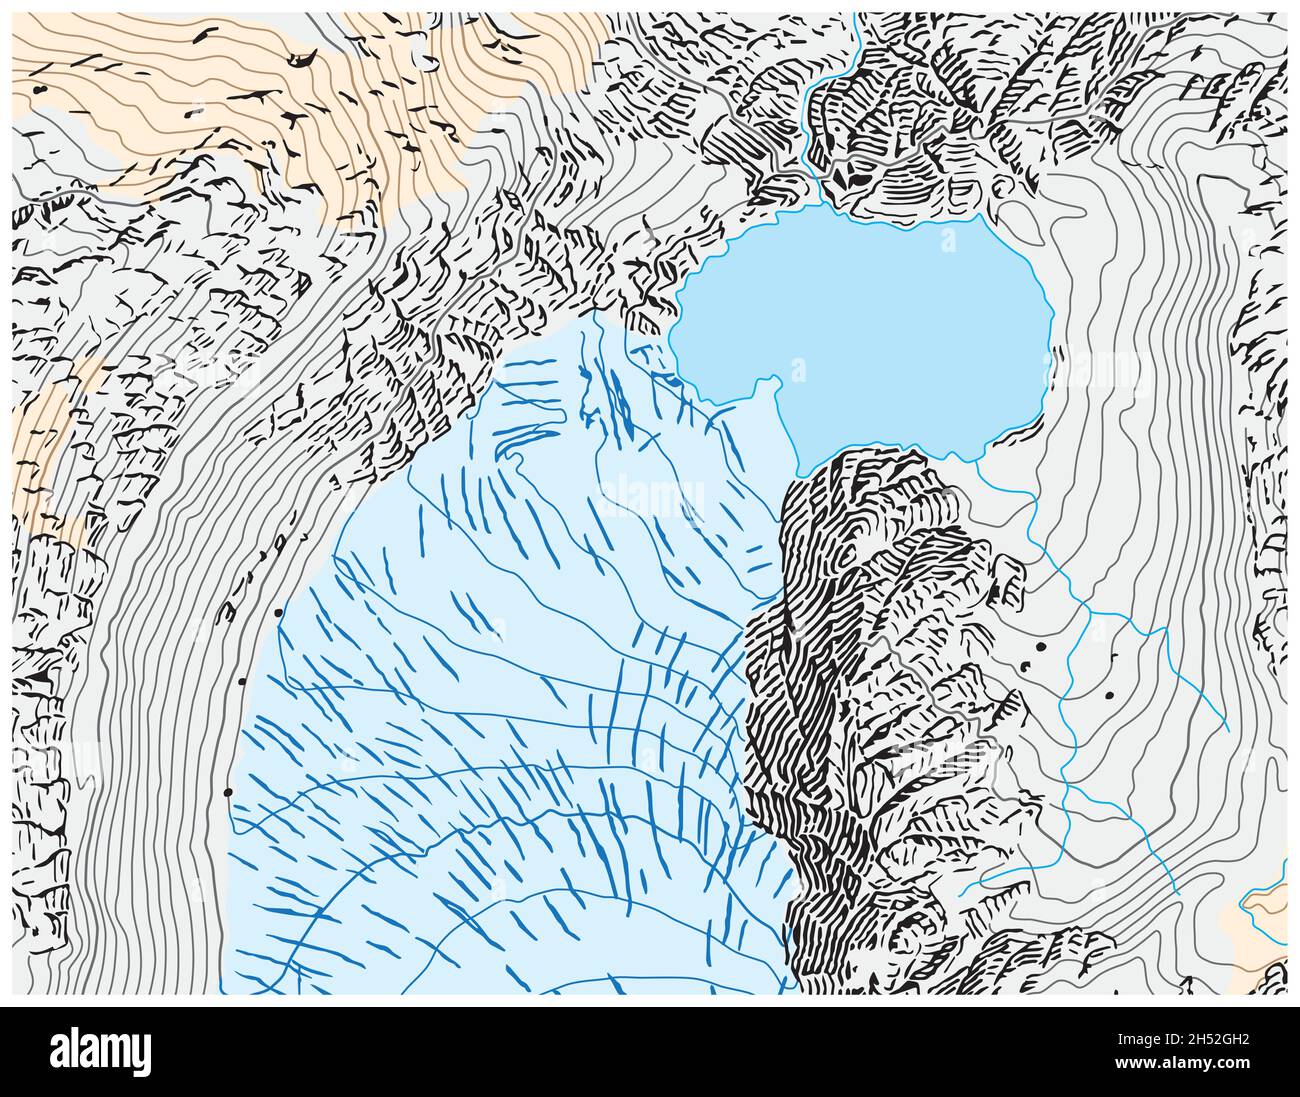 Abstrakte topographische Hochgebirgskarte mit Felsdarstellung Stock Vektor